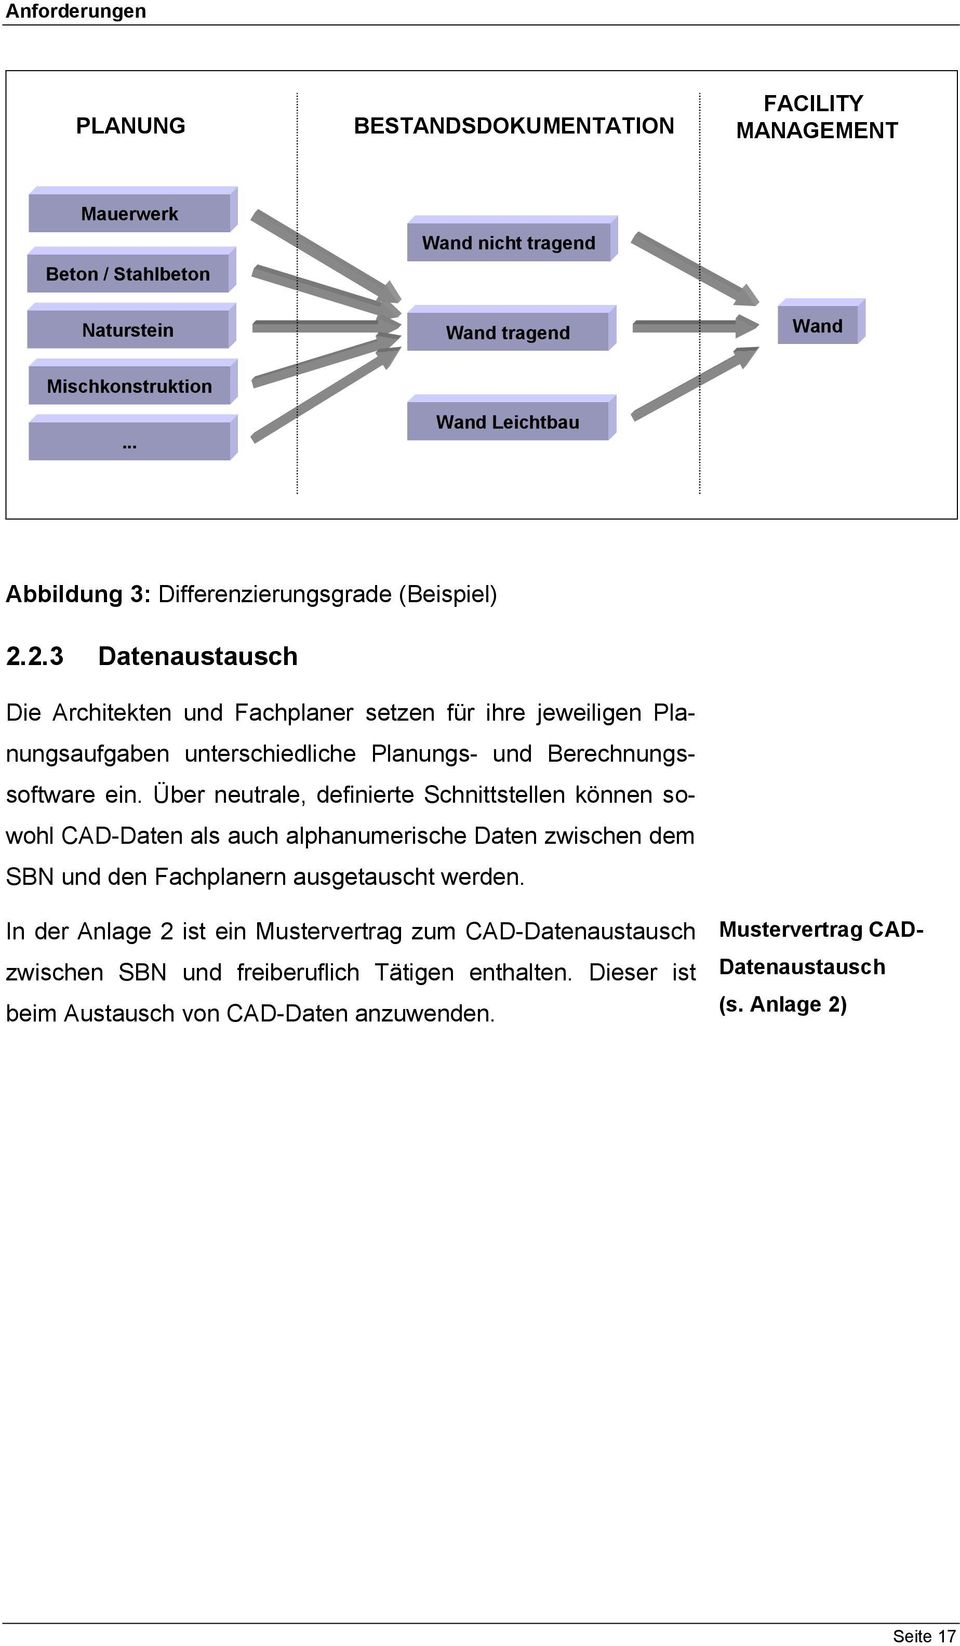 Facility Management Fm Handbuch Niedersachsen Integrierte